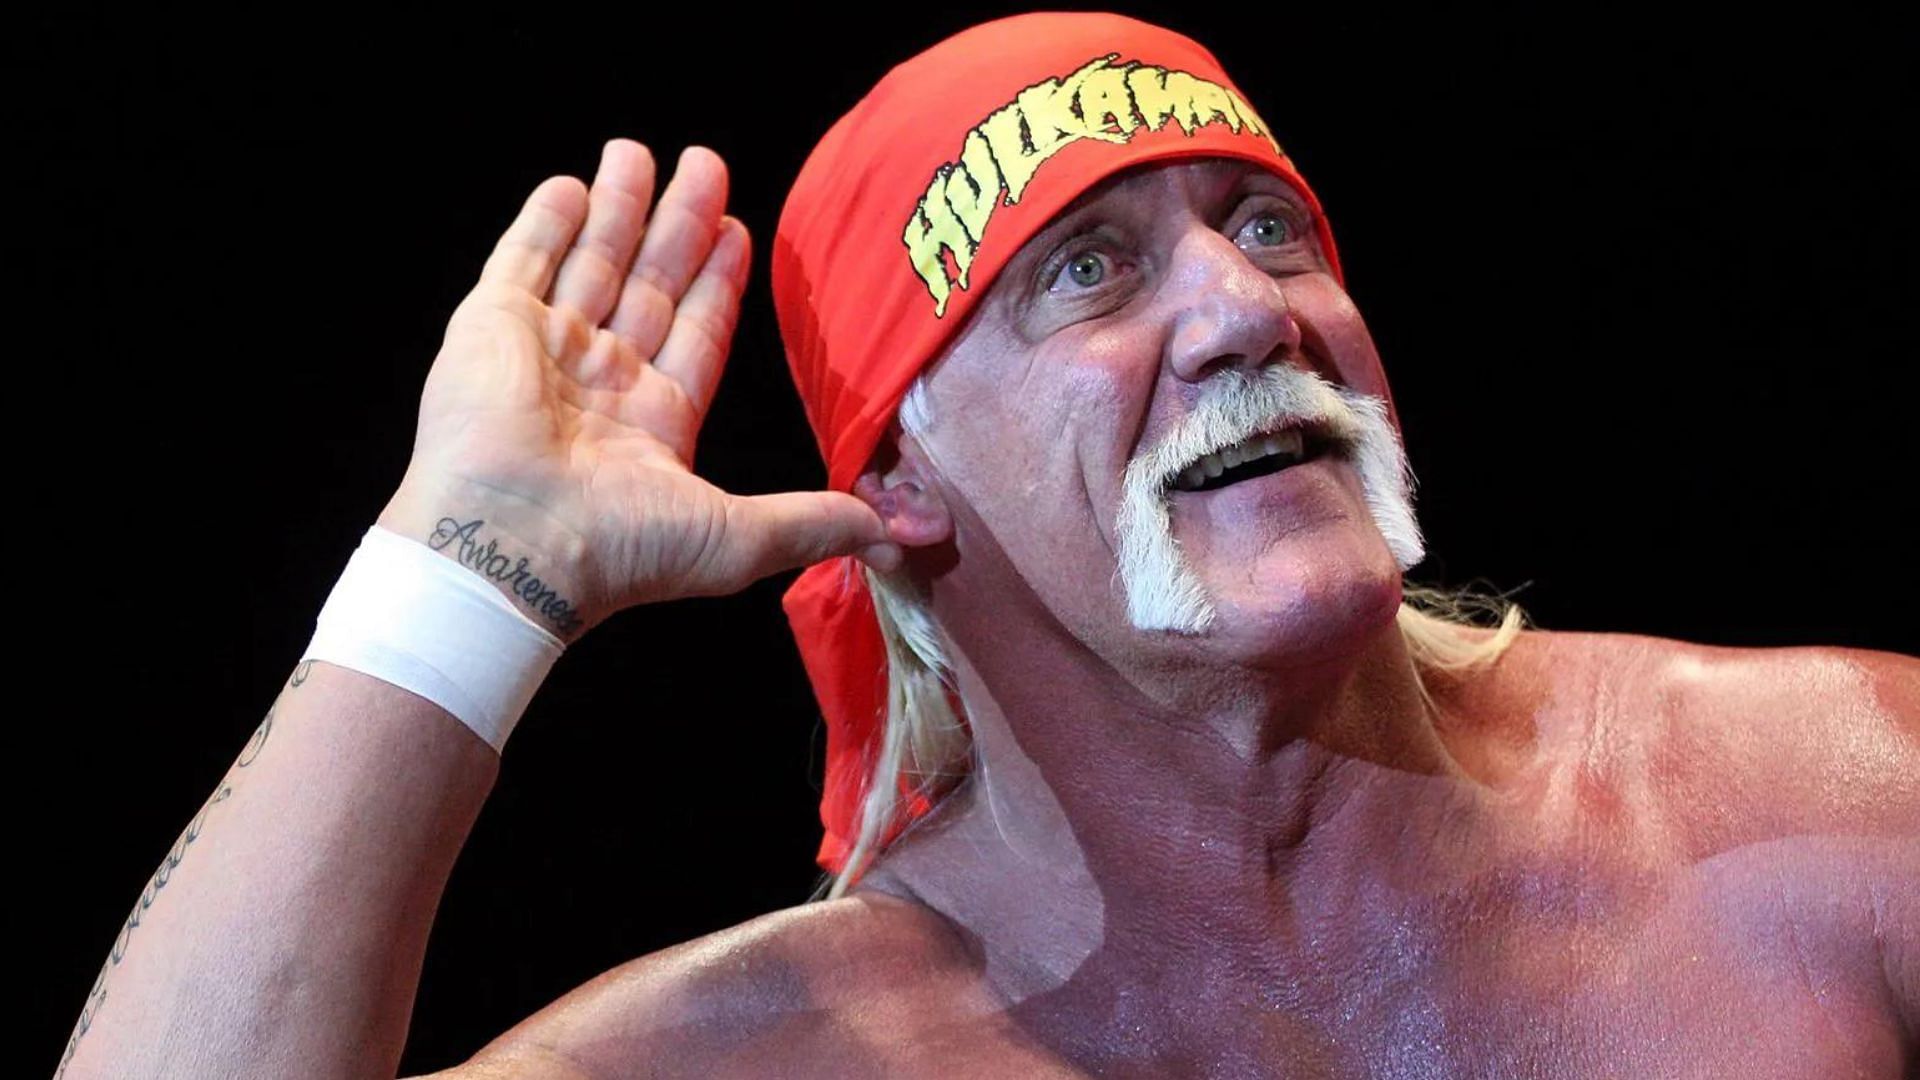 What was Hulk Hogan